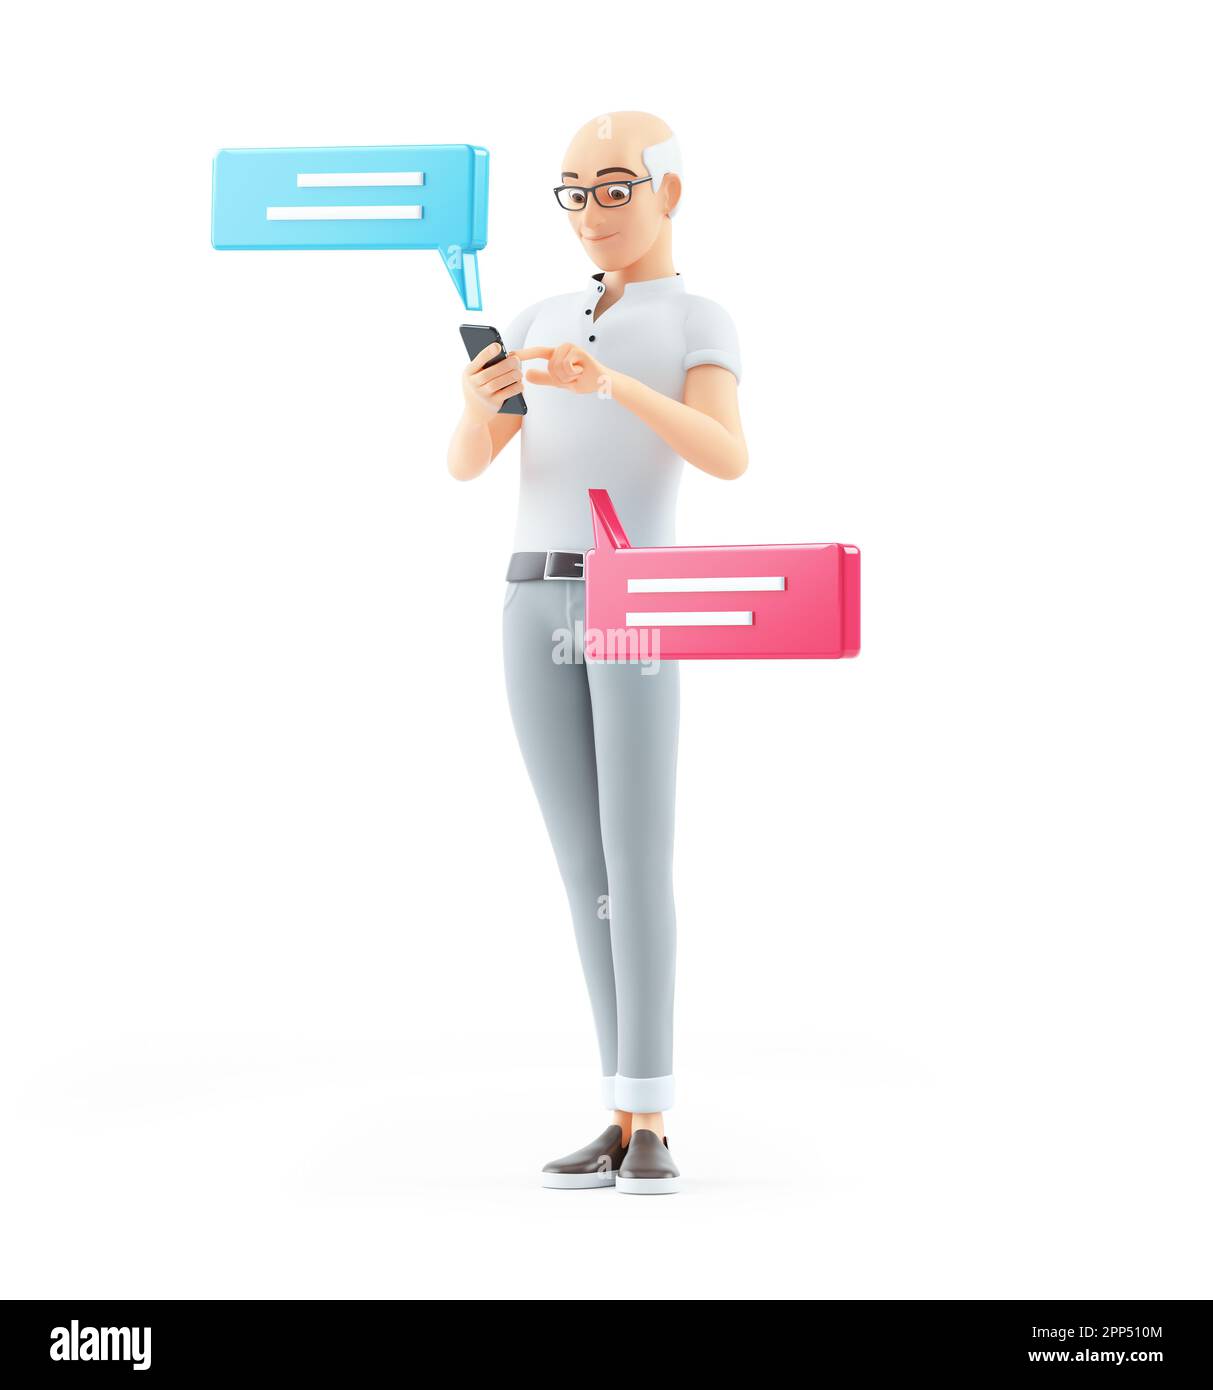 3d uomo anziano che invia messaggi di testo con lo smartphone, illustrazione isolata su sfondo bianco Foto Stock